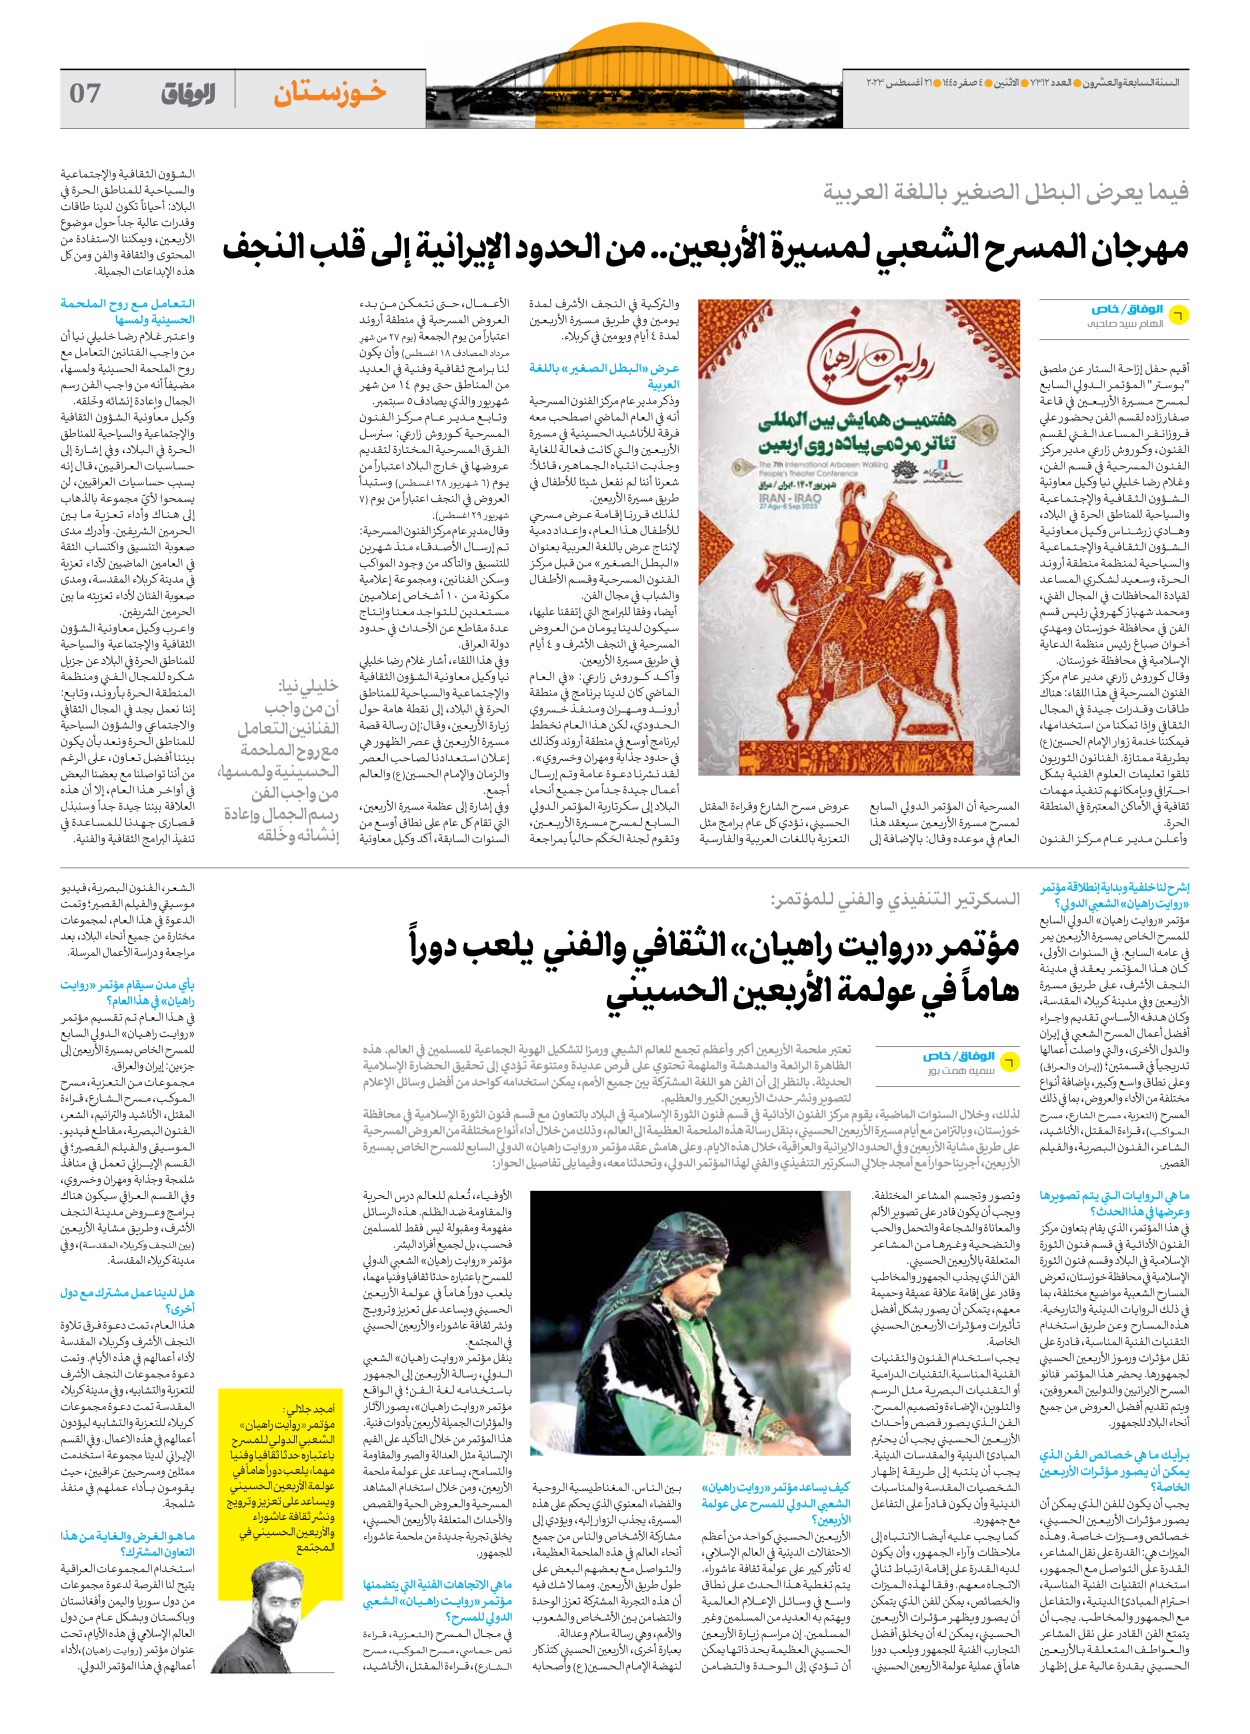 صحیفة ایران الدولیة الوفاق - العدد سبعة آلاف وثلاثمائة واثنا عشر - ٢١ أغسطس ٢٠٢٣ - الصفحة ۷